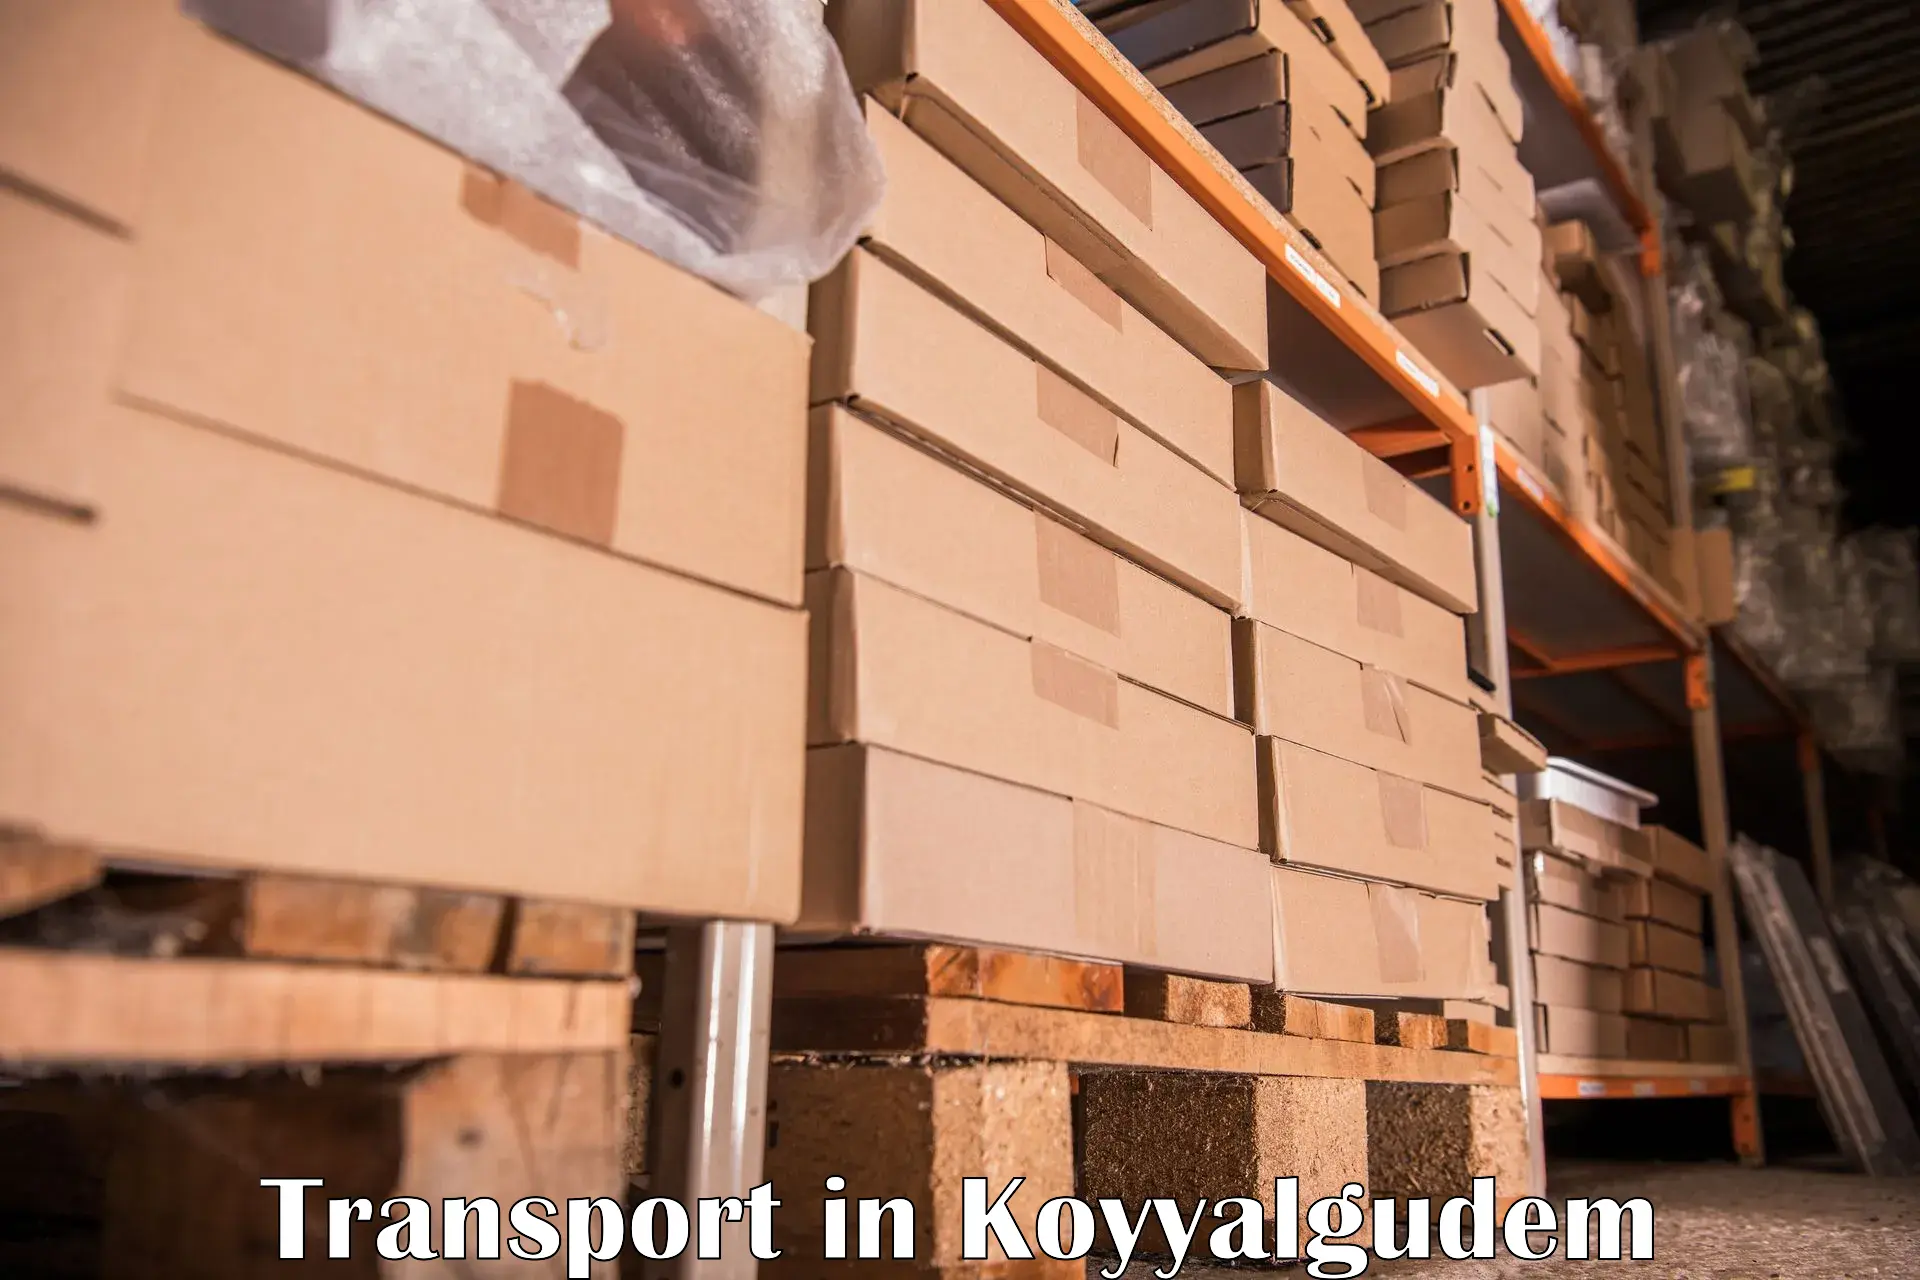 Air cargo transport services in Koyyalgudem